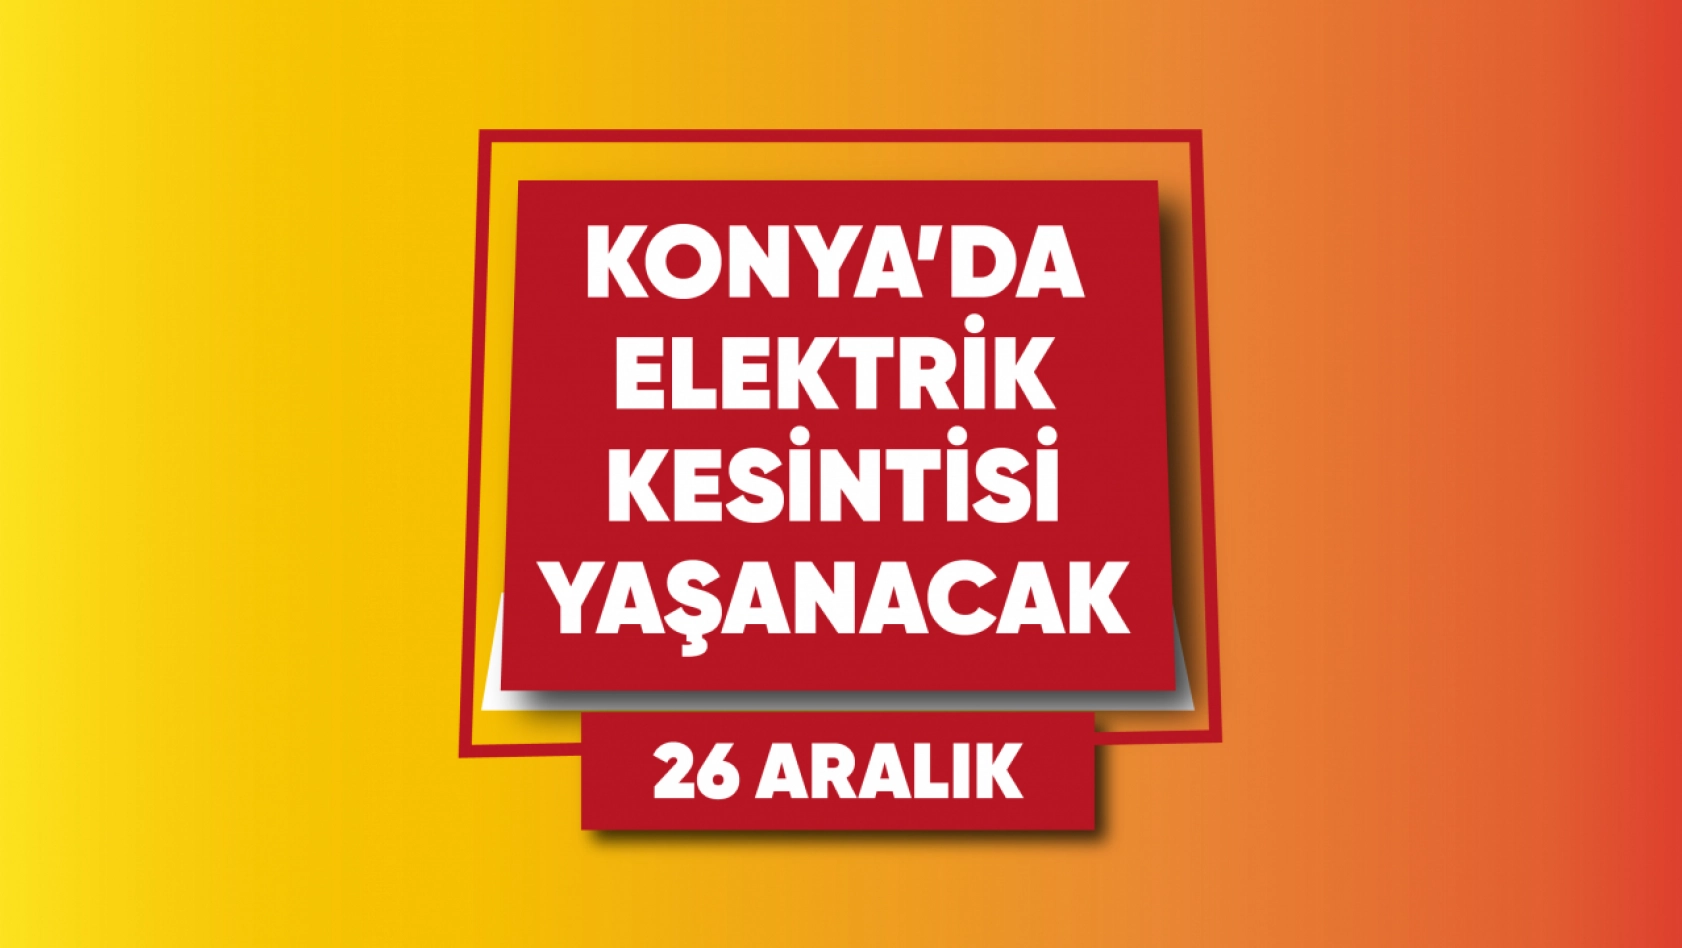 Konya'da elektrik kesintisi yaşanacak mahalle ve sokaklar (26 Aralık)